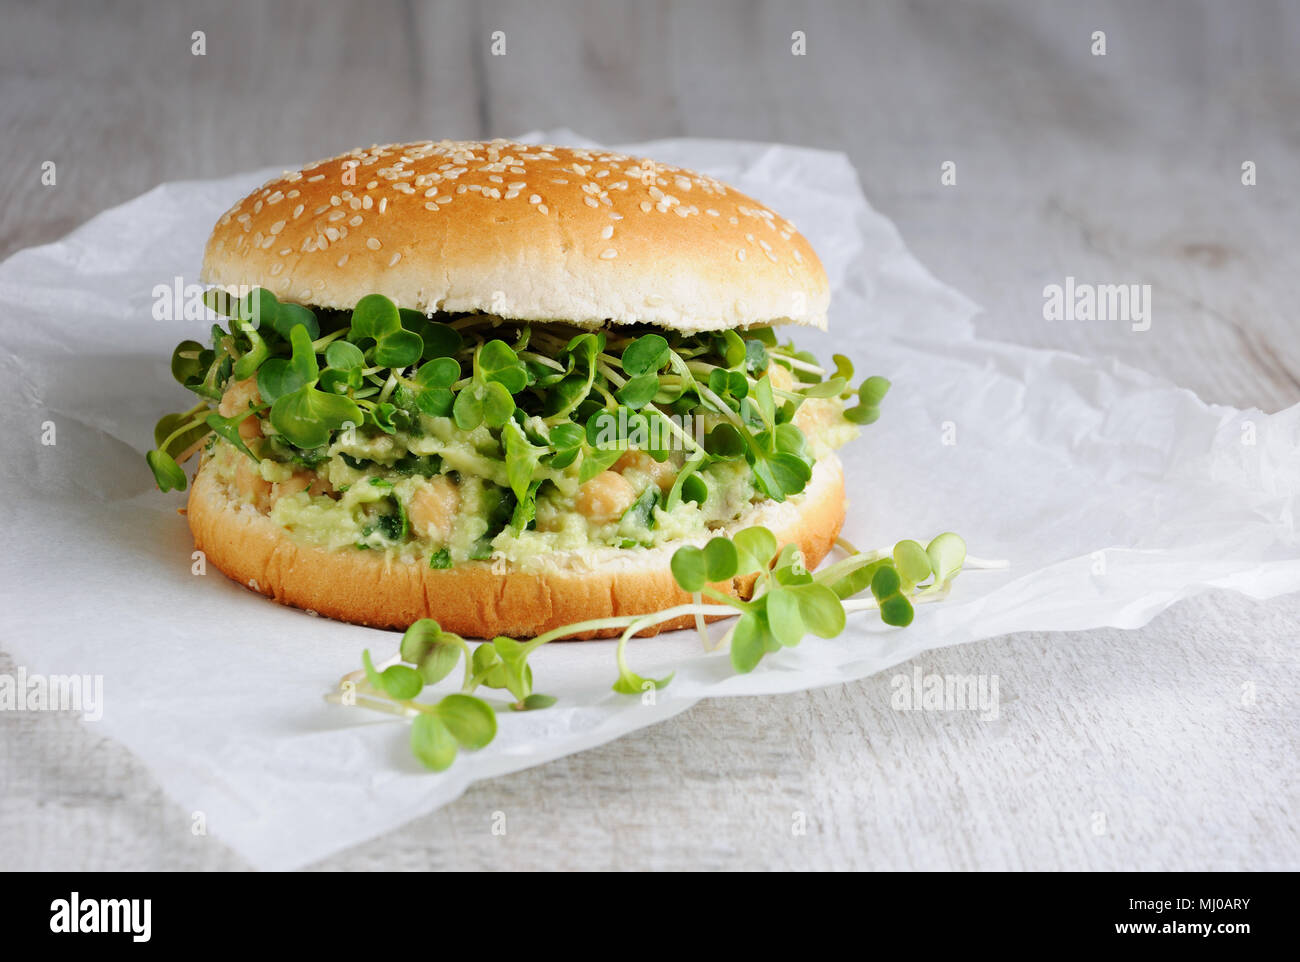 Eine vegetarische Burger aus einer Gluten-freien Brötchen mit Kichererbsen, Avocado und Kräuter, Radieschen Sprossen. Ein schnelles und gesundes Mittagessen Idee, von der sie glauben, dass Energi Stockfoto